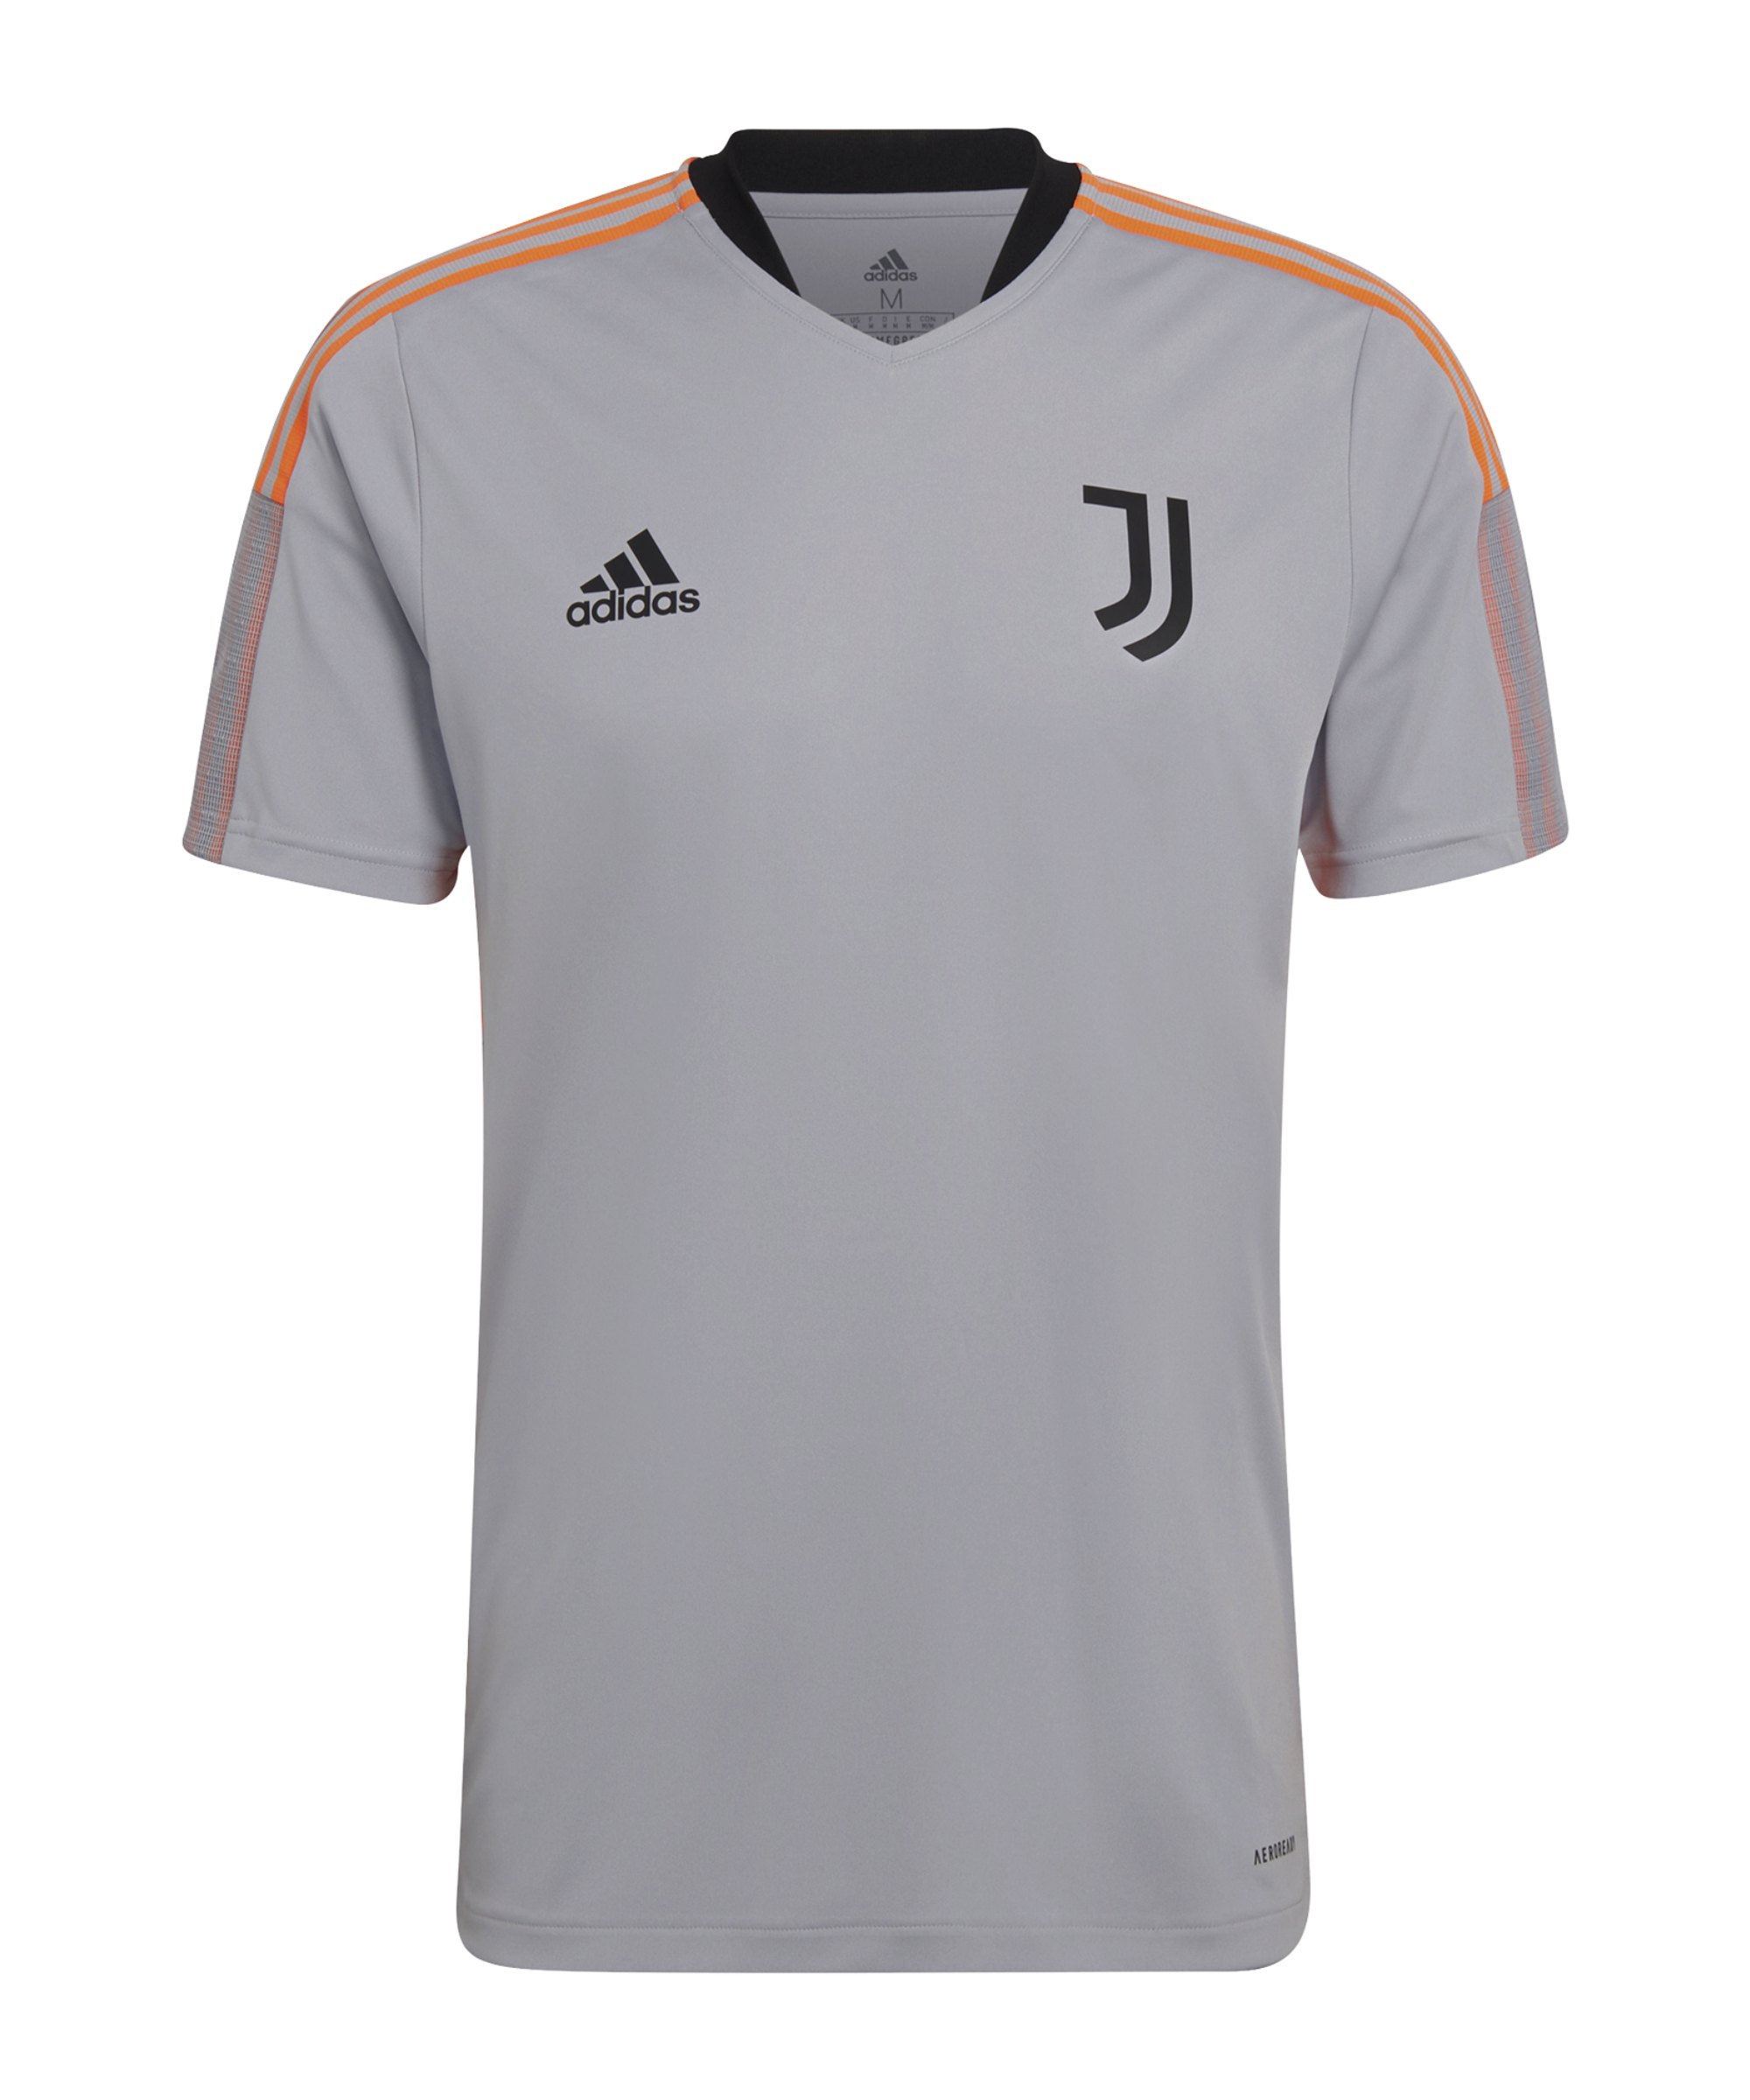 adidas Juventus Turin Trainingsshirt Grau - grau